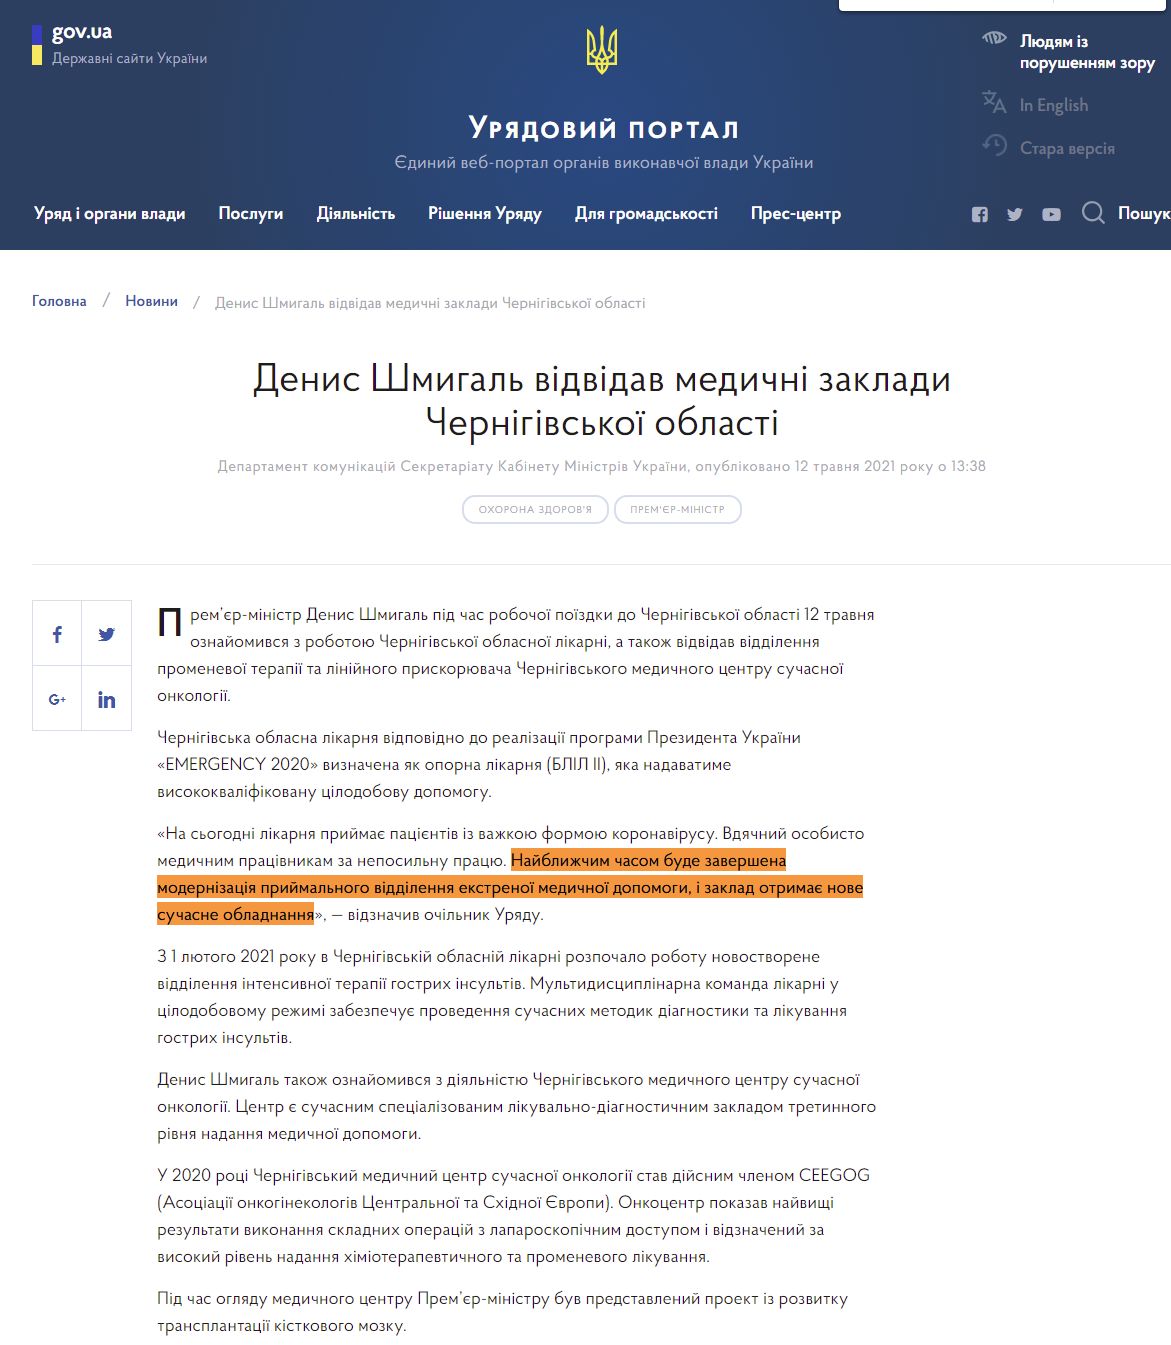 https://www.kmu.gov.ua/news/denis-shmigal-vidvidav-medichni-zakladi-chernigivskoyi-oblasti